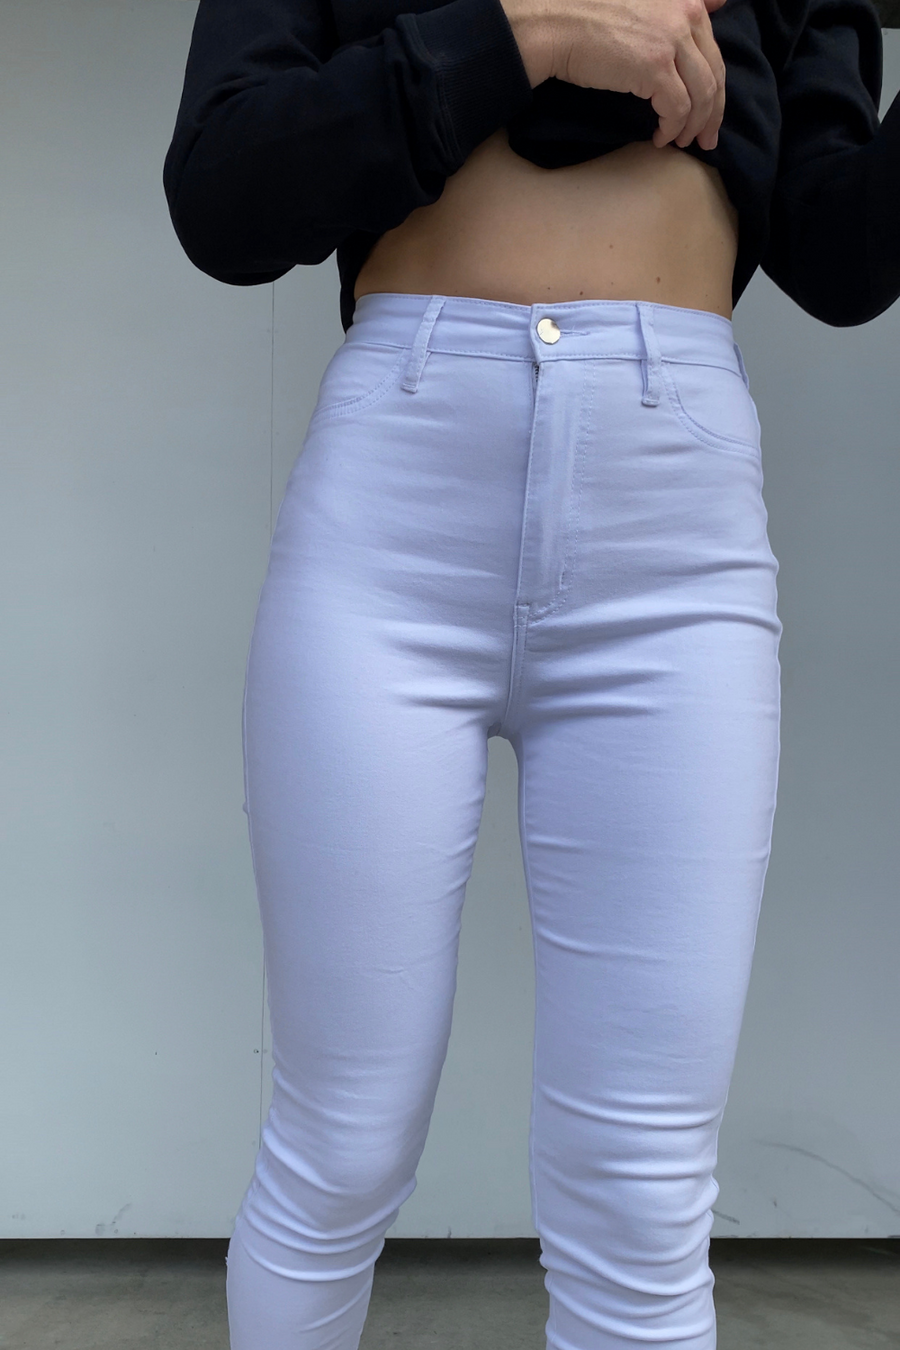 Crisp White Jeans - Her Crew